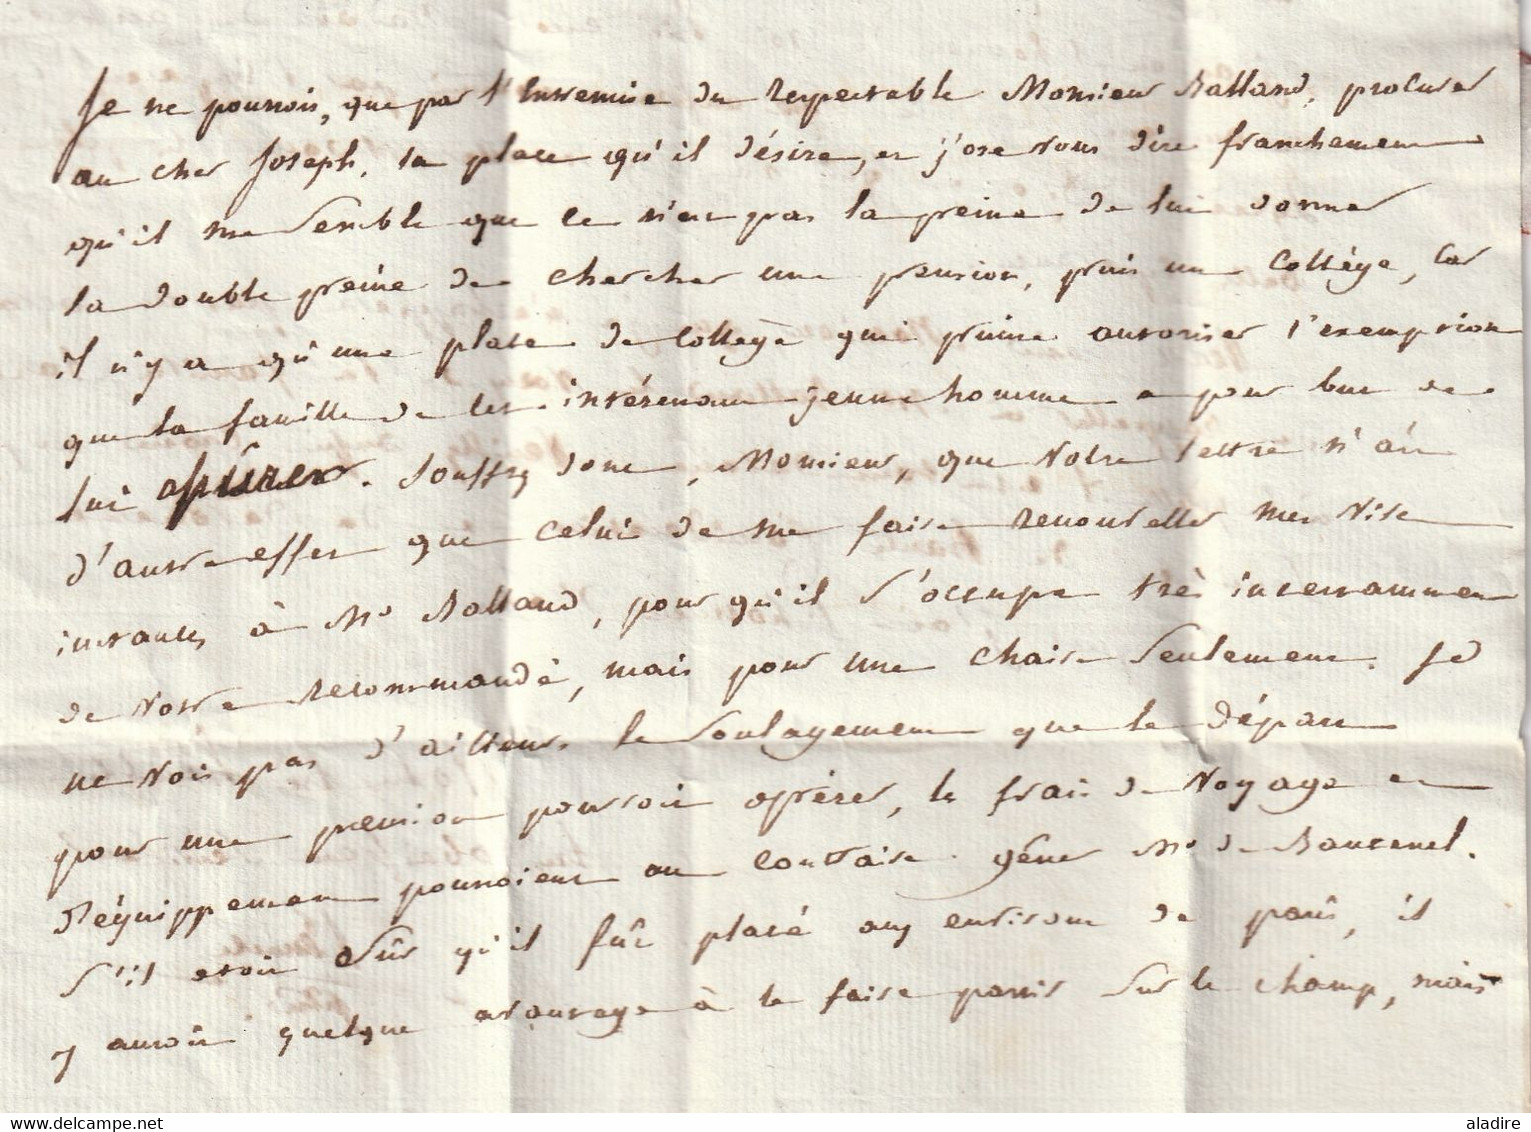 1812 - Marque Postale P dans triangle ouvert PARIS en rouge sur Lettre pliée avec corresp de 2 pages vers Salins, Jura